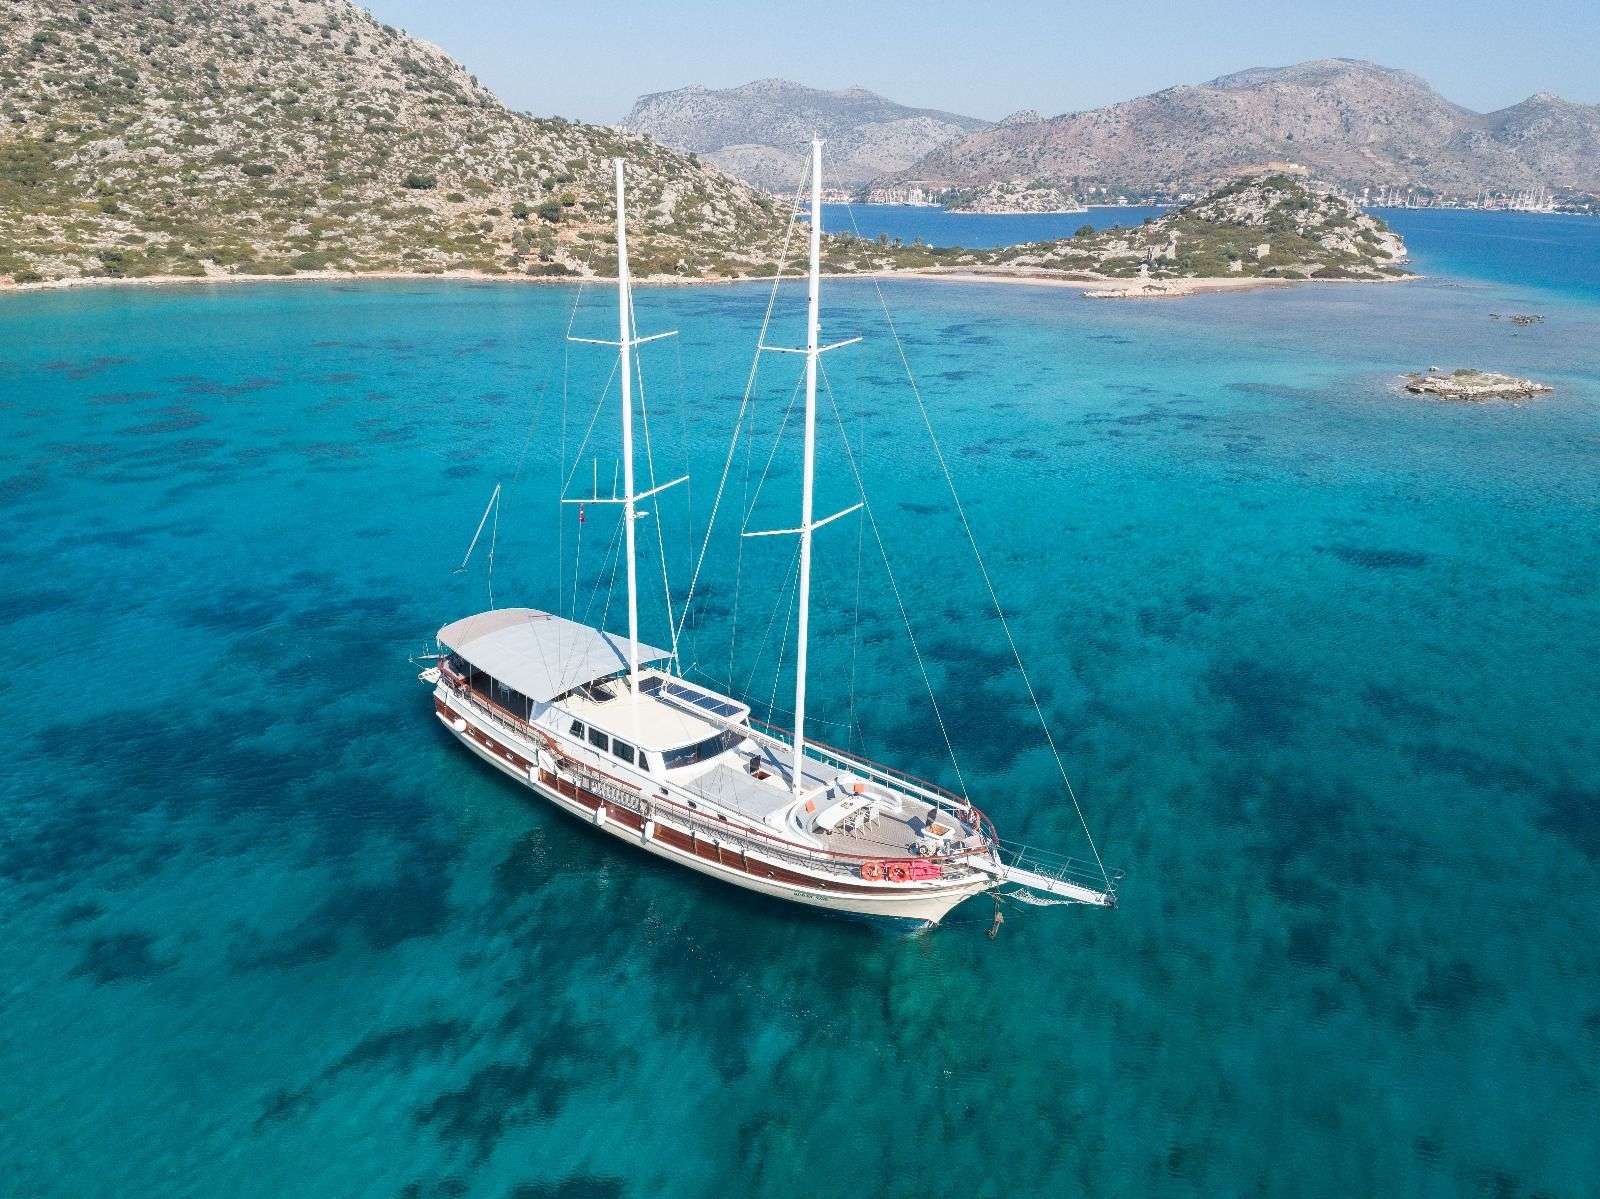 koray ege - Motor Boat Charter Turkey & Boat hire in Greece & Turkey 2